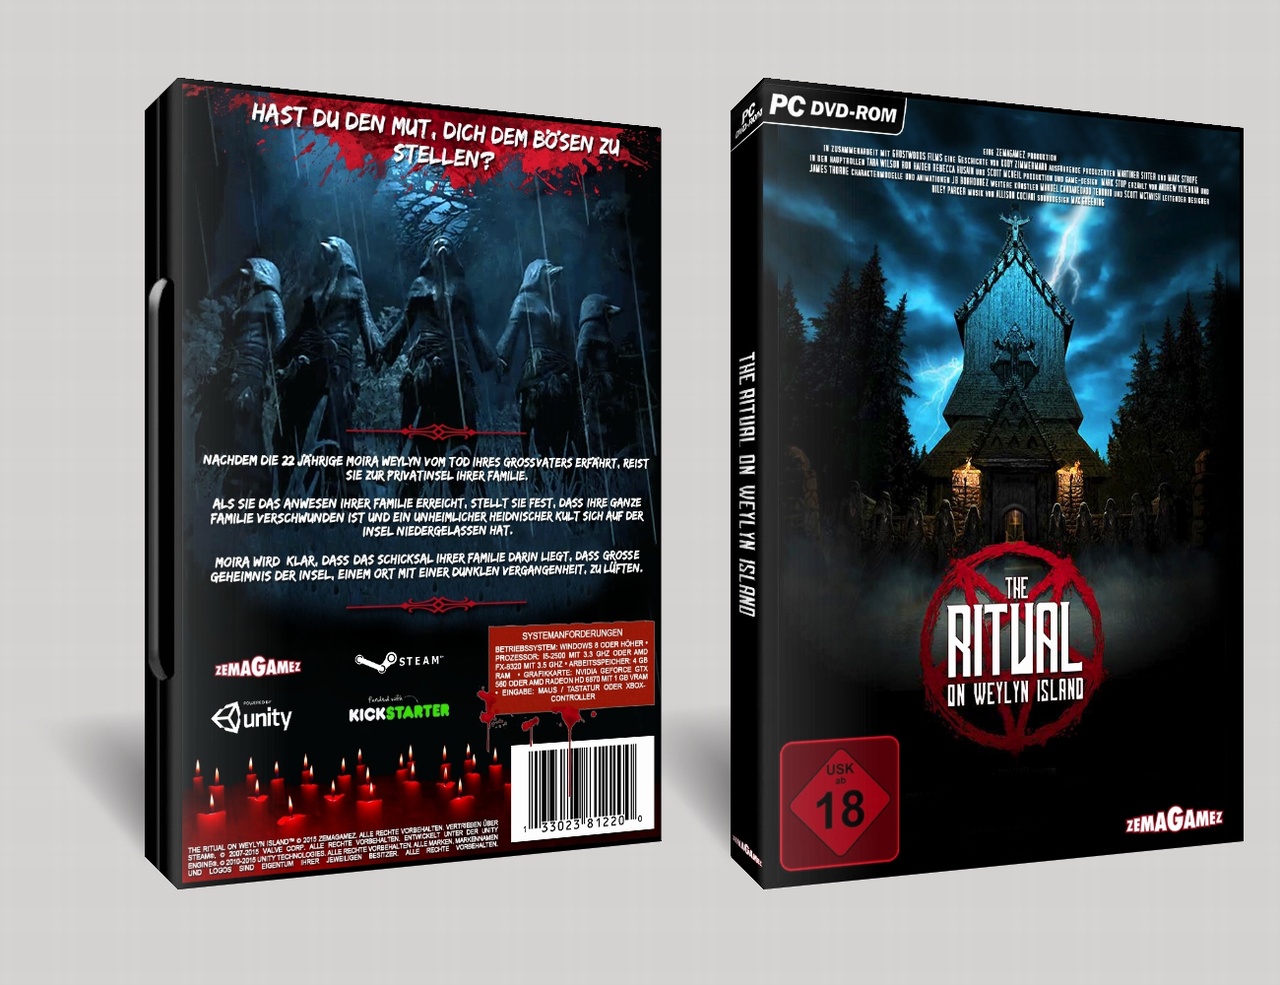 The Ritual on Weylyn Island box cover